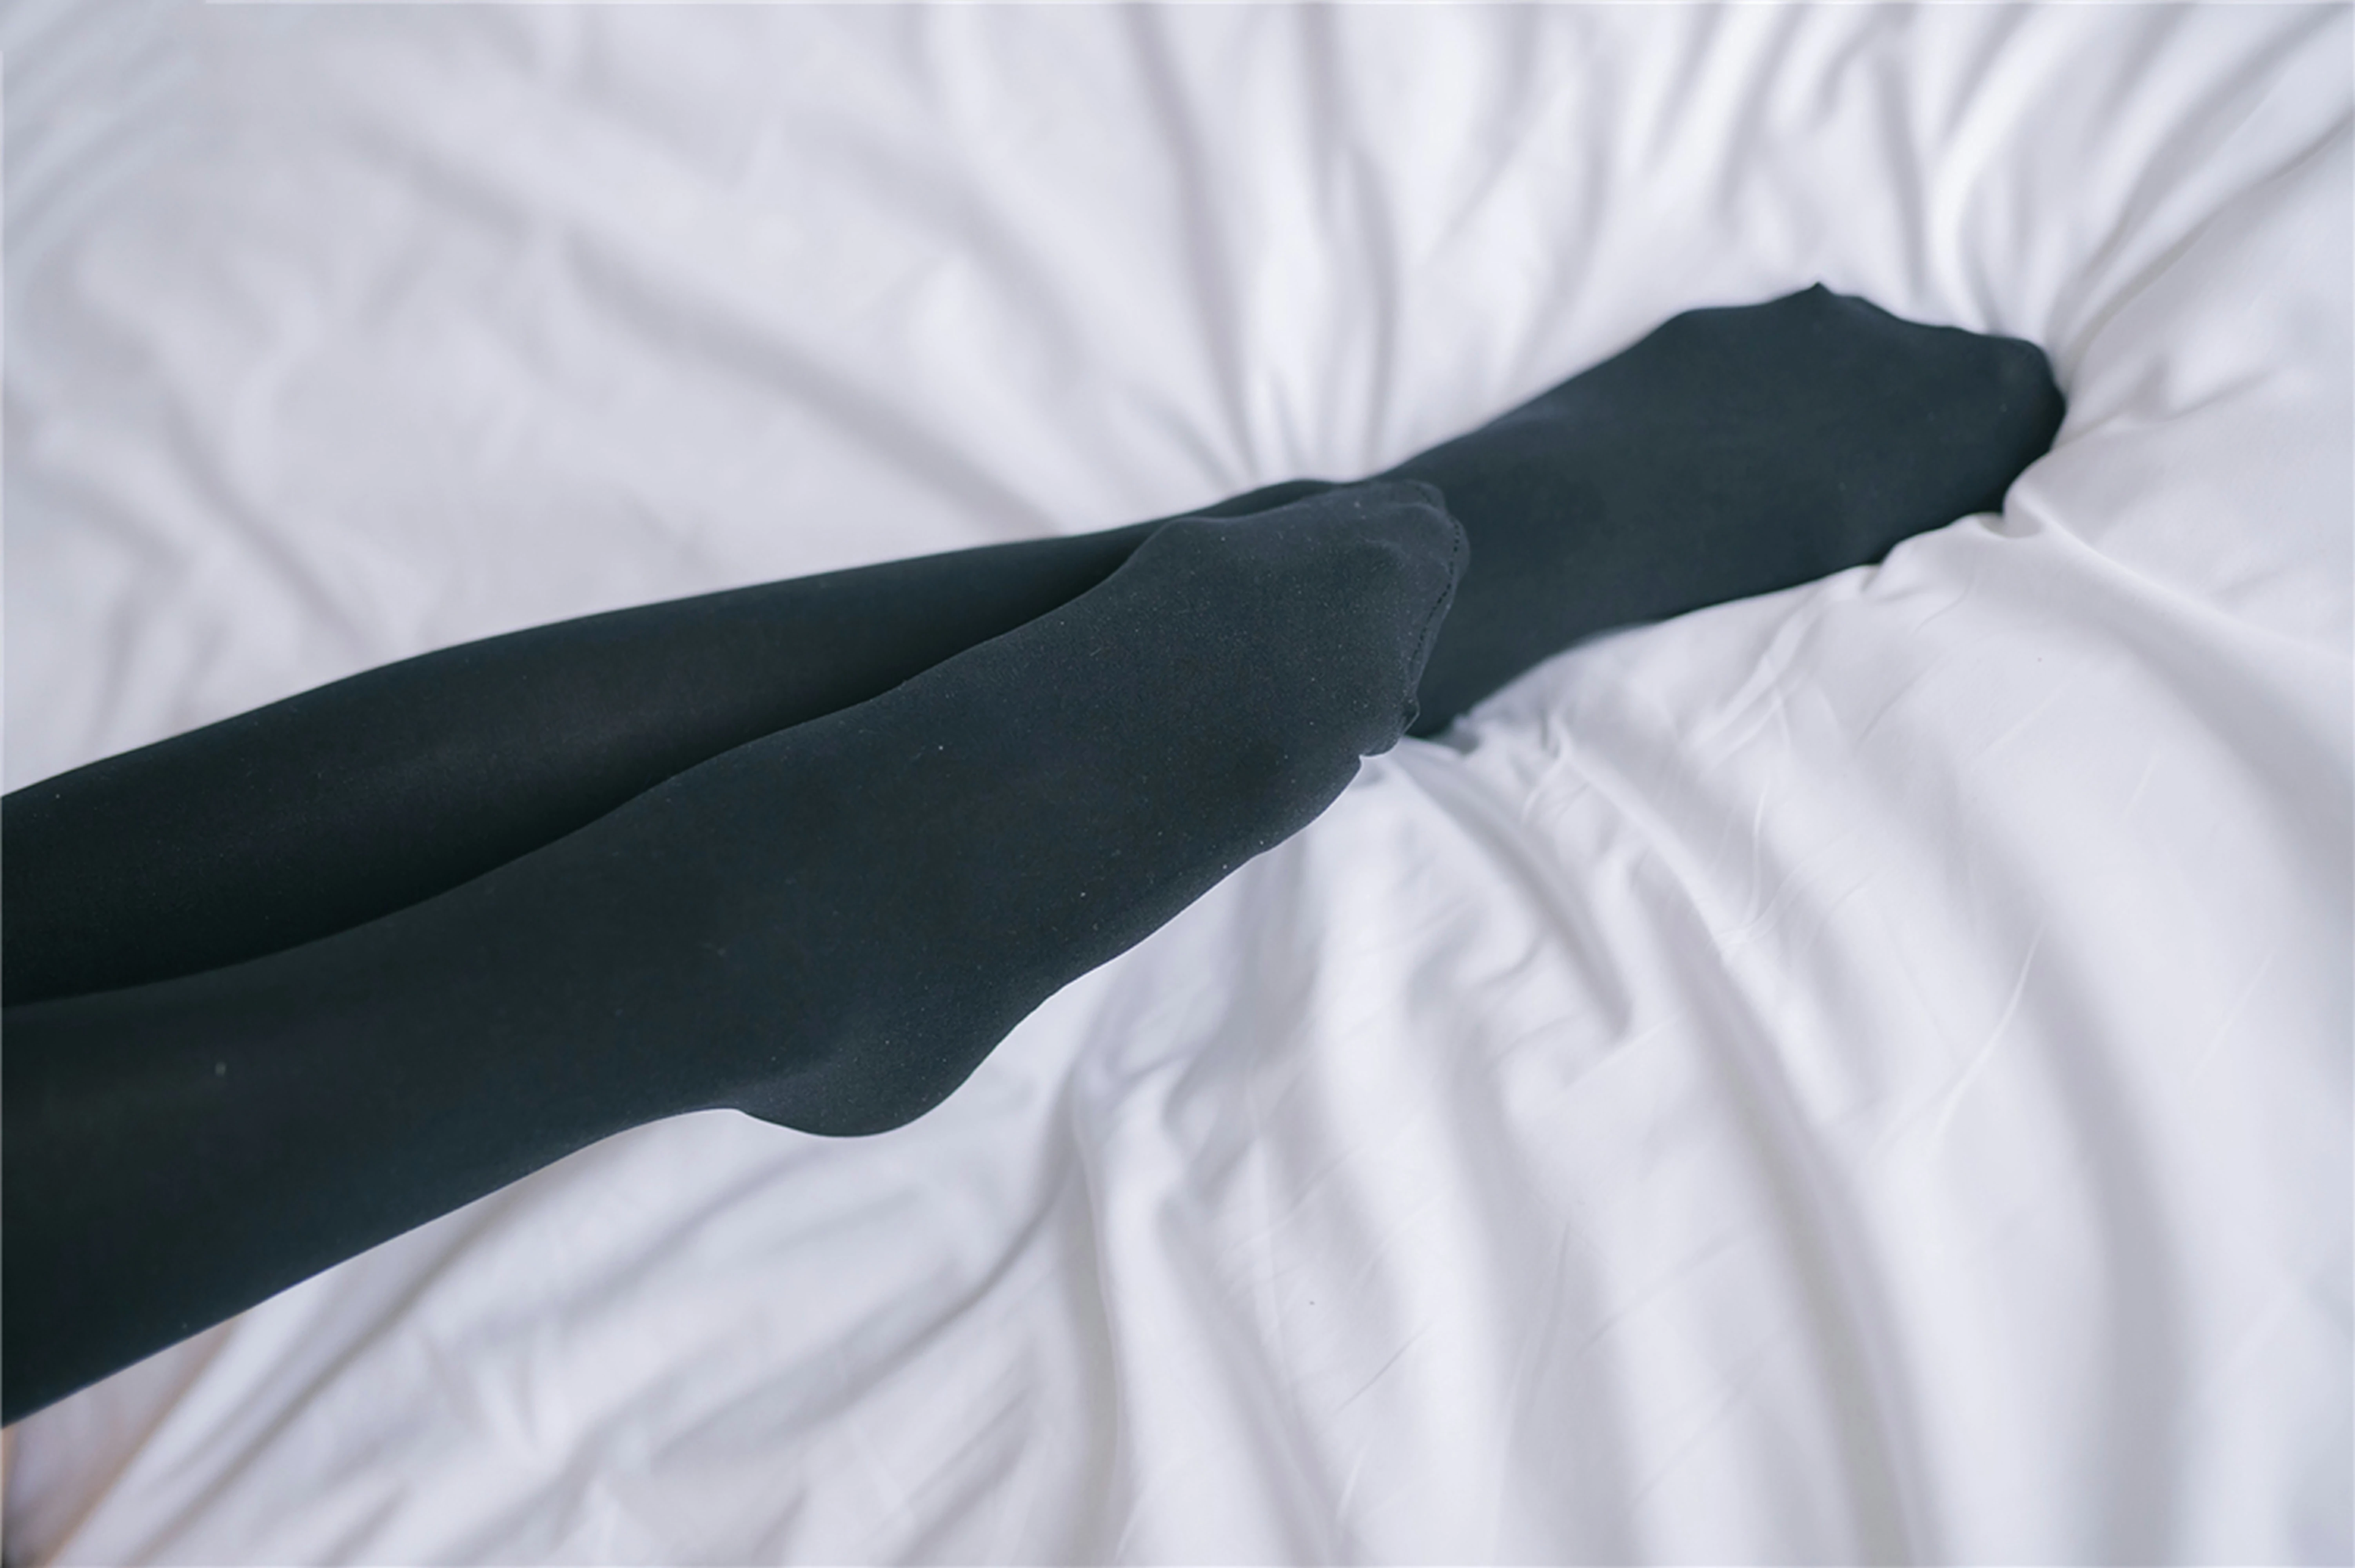 [风之领域]NO.119 性感学妹小萝莉 黑色情趣高中女生制服与超短裙加黑色丝袜美腿私房写真集,